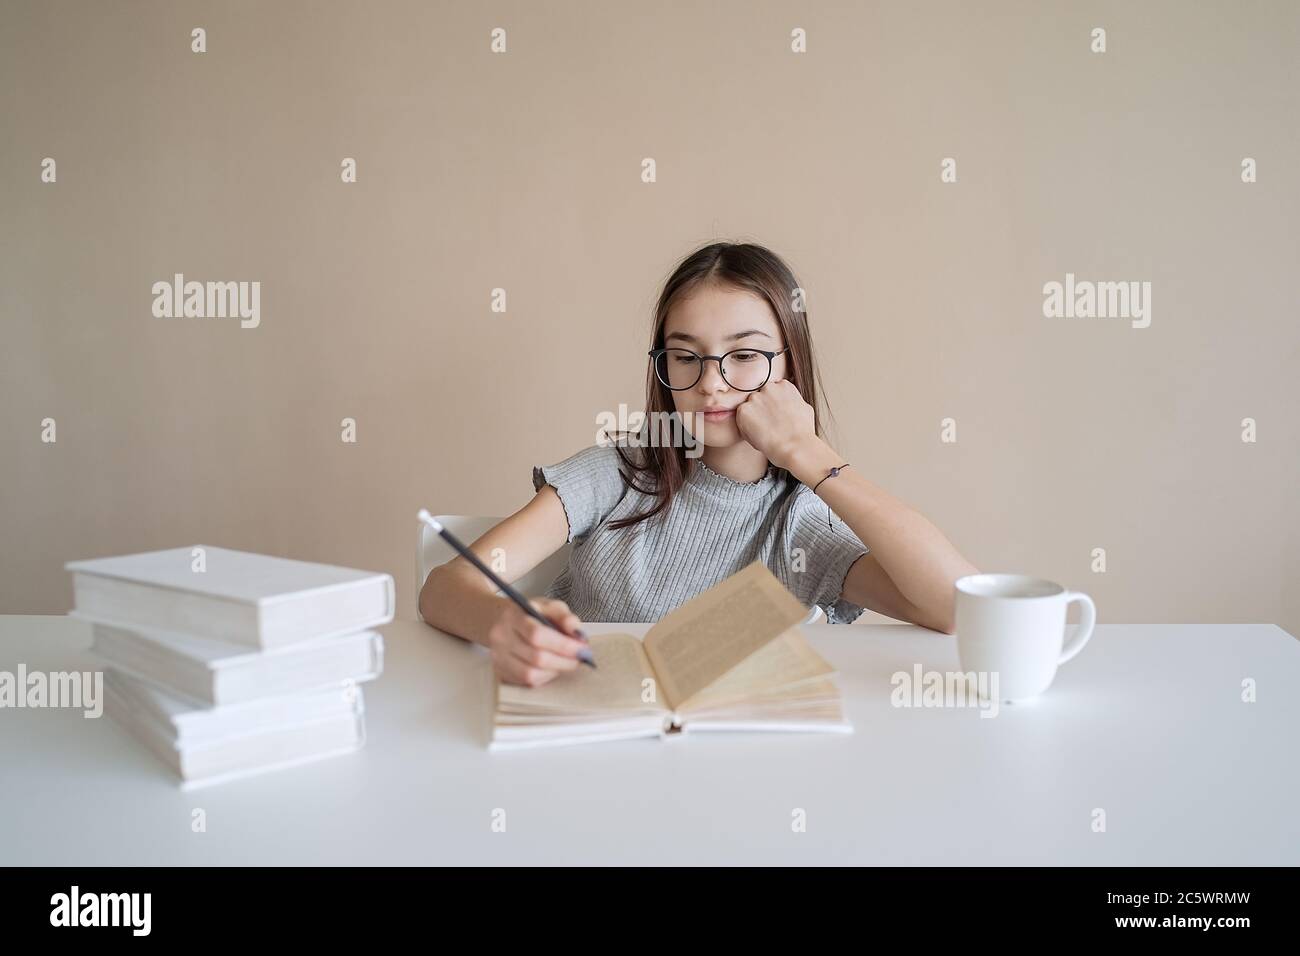 Ragazza adolescente carina seduta a tavola con libri e facendo compiti. Istruzione, bambini e concetto scolastico Foto Stock